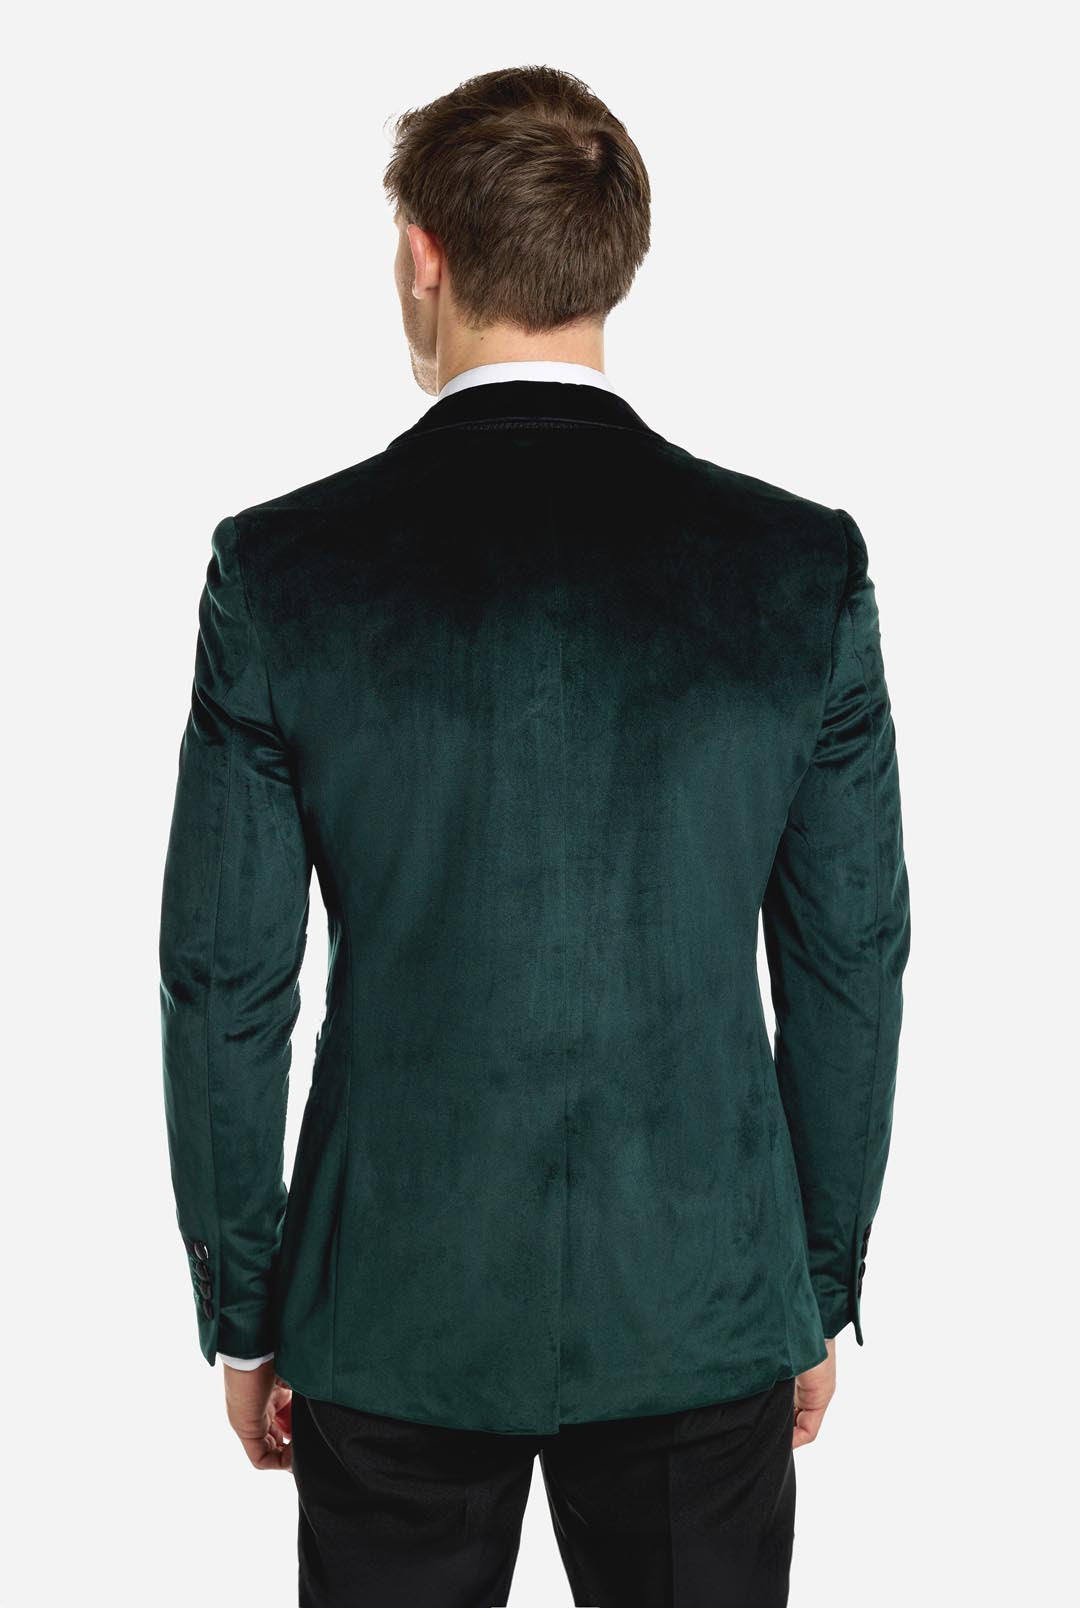 Dinner Jacket - Rich Green | Velvet Tuxedo Jacket | OppoSuits